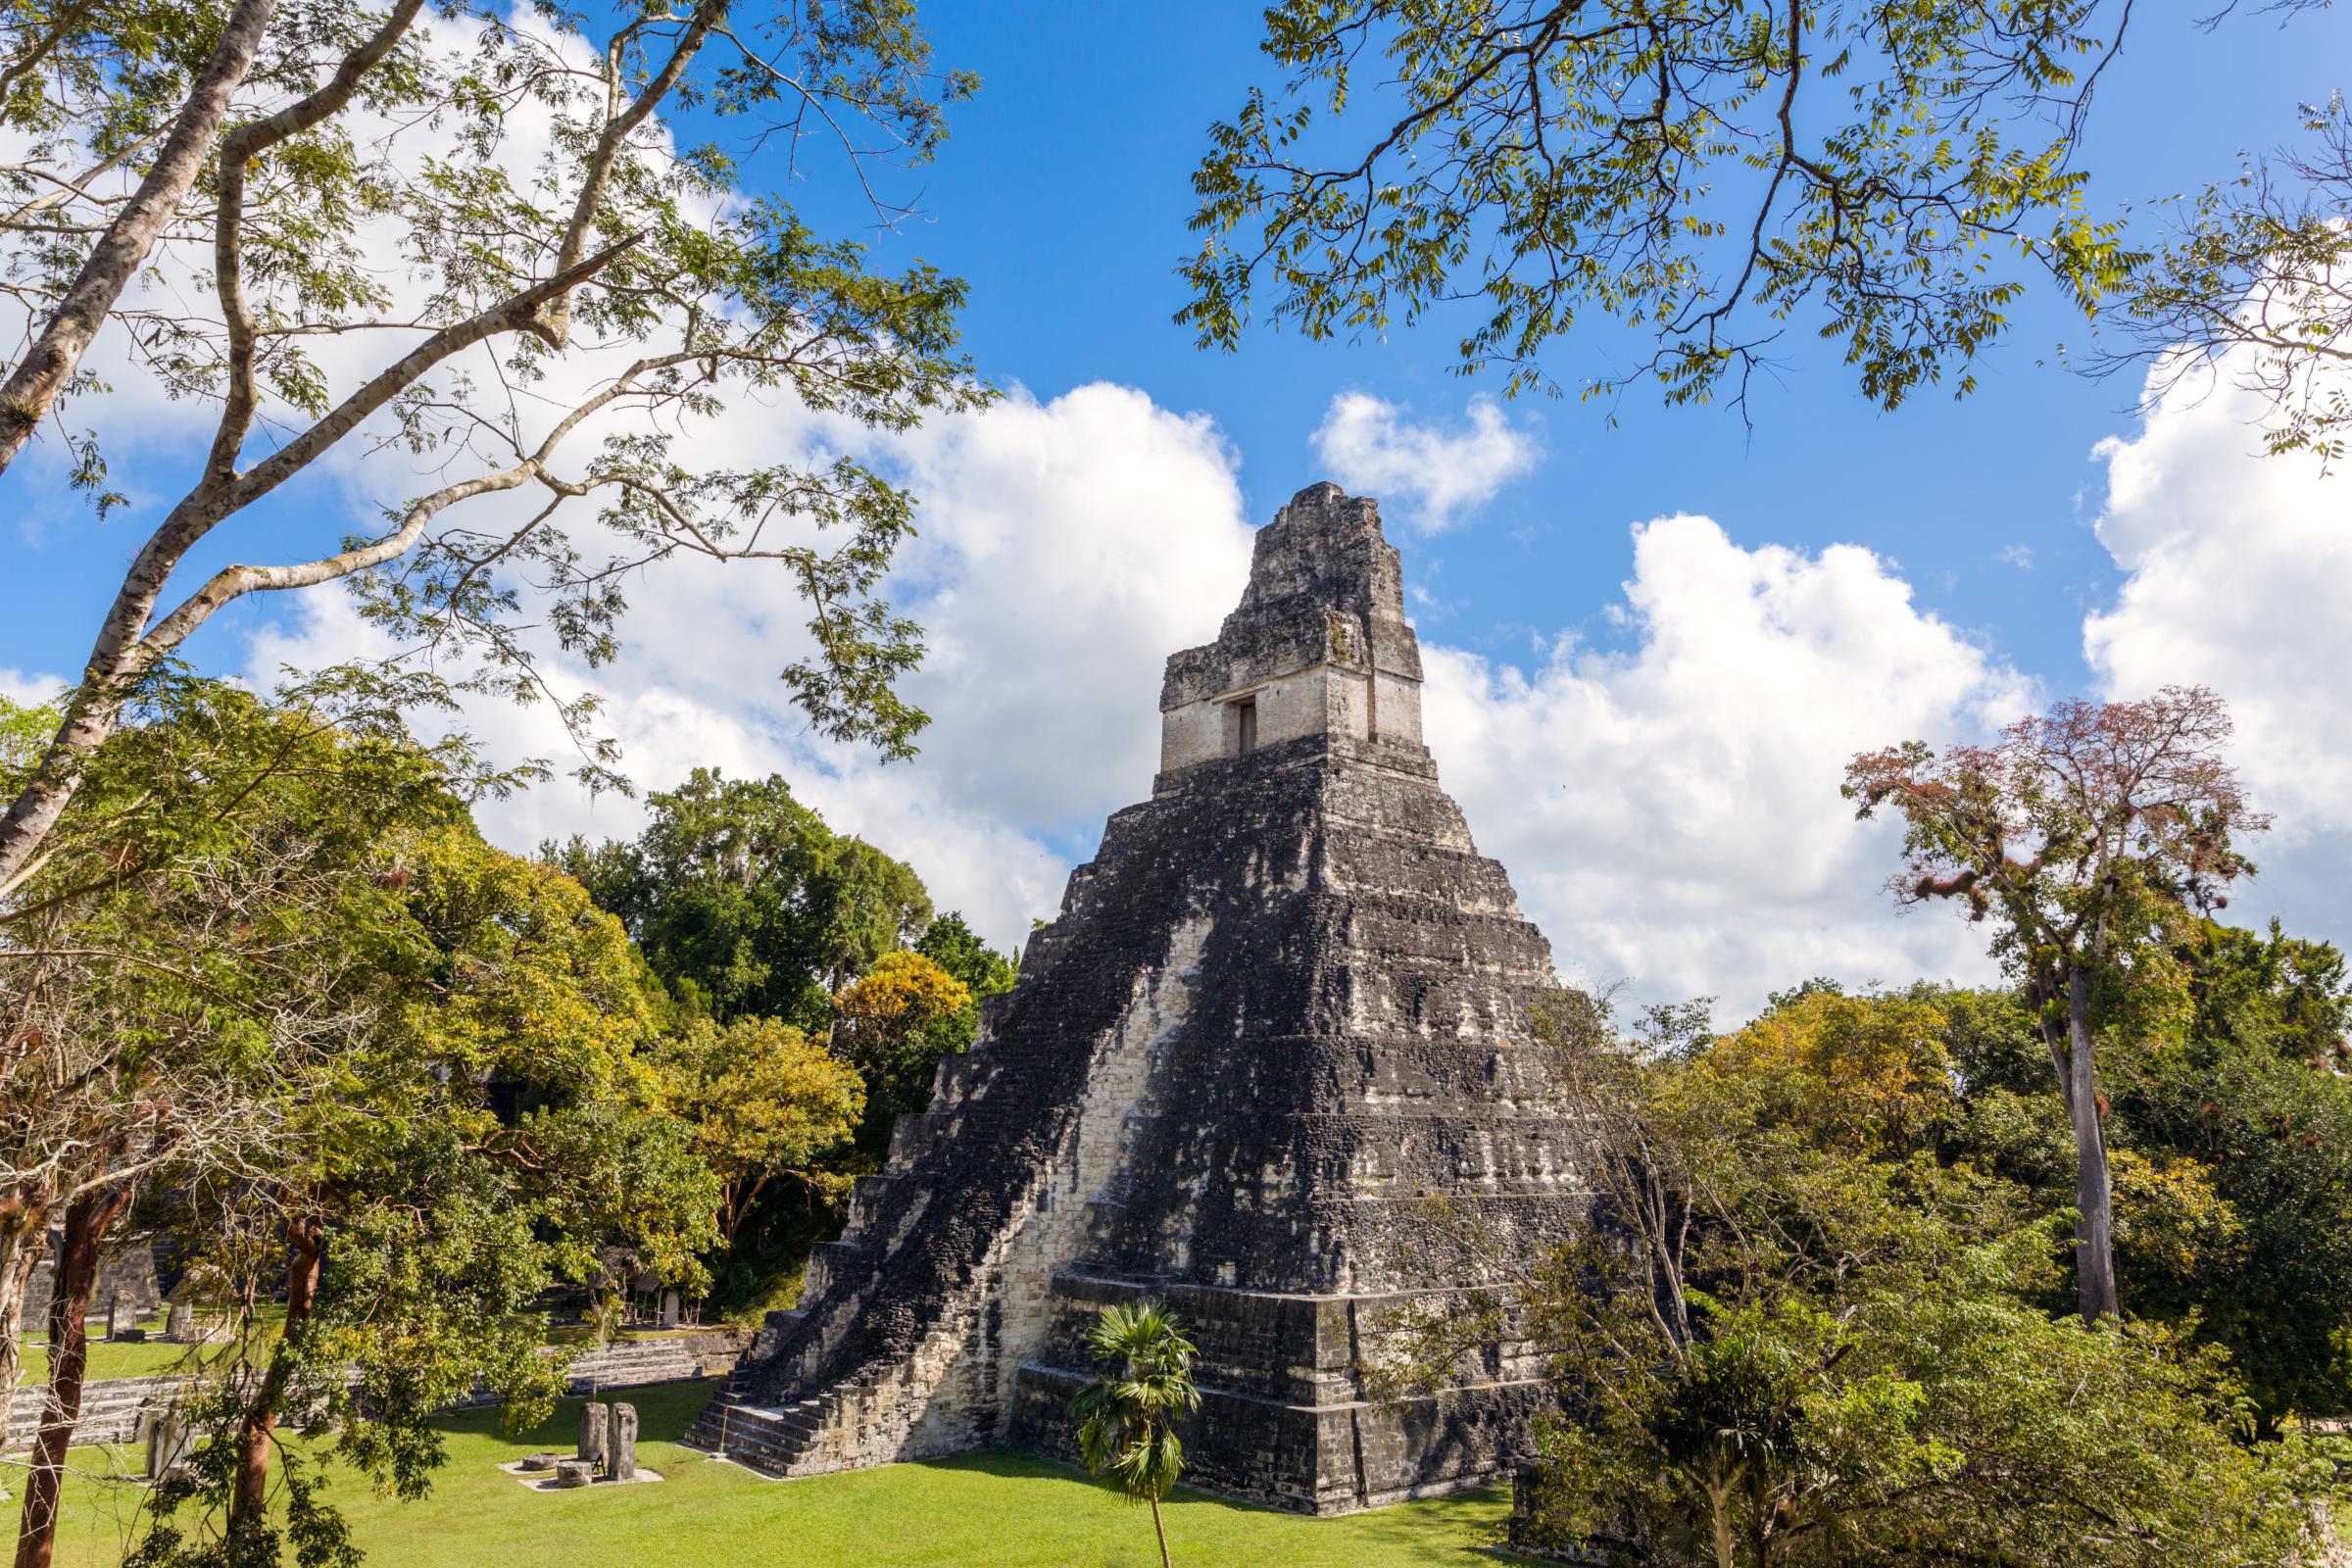 Mayan ruins of Tikal, Temple I, Guatemala